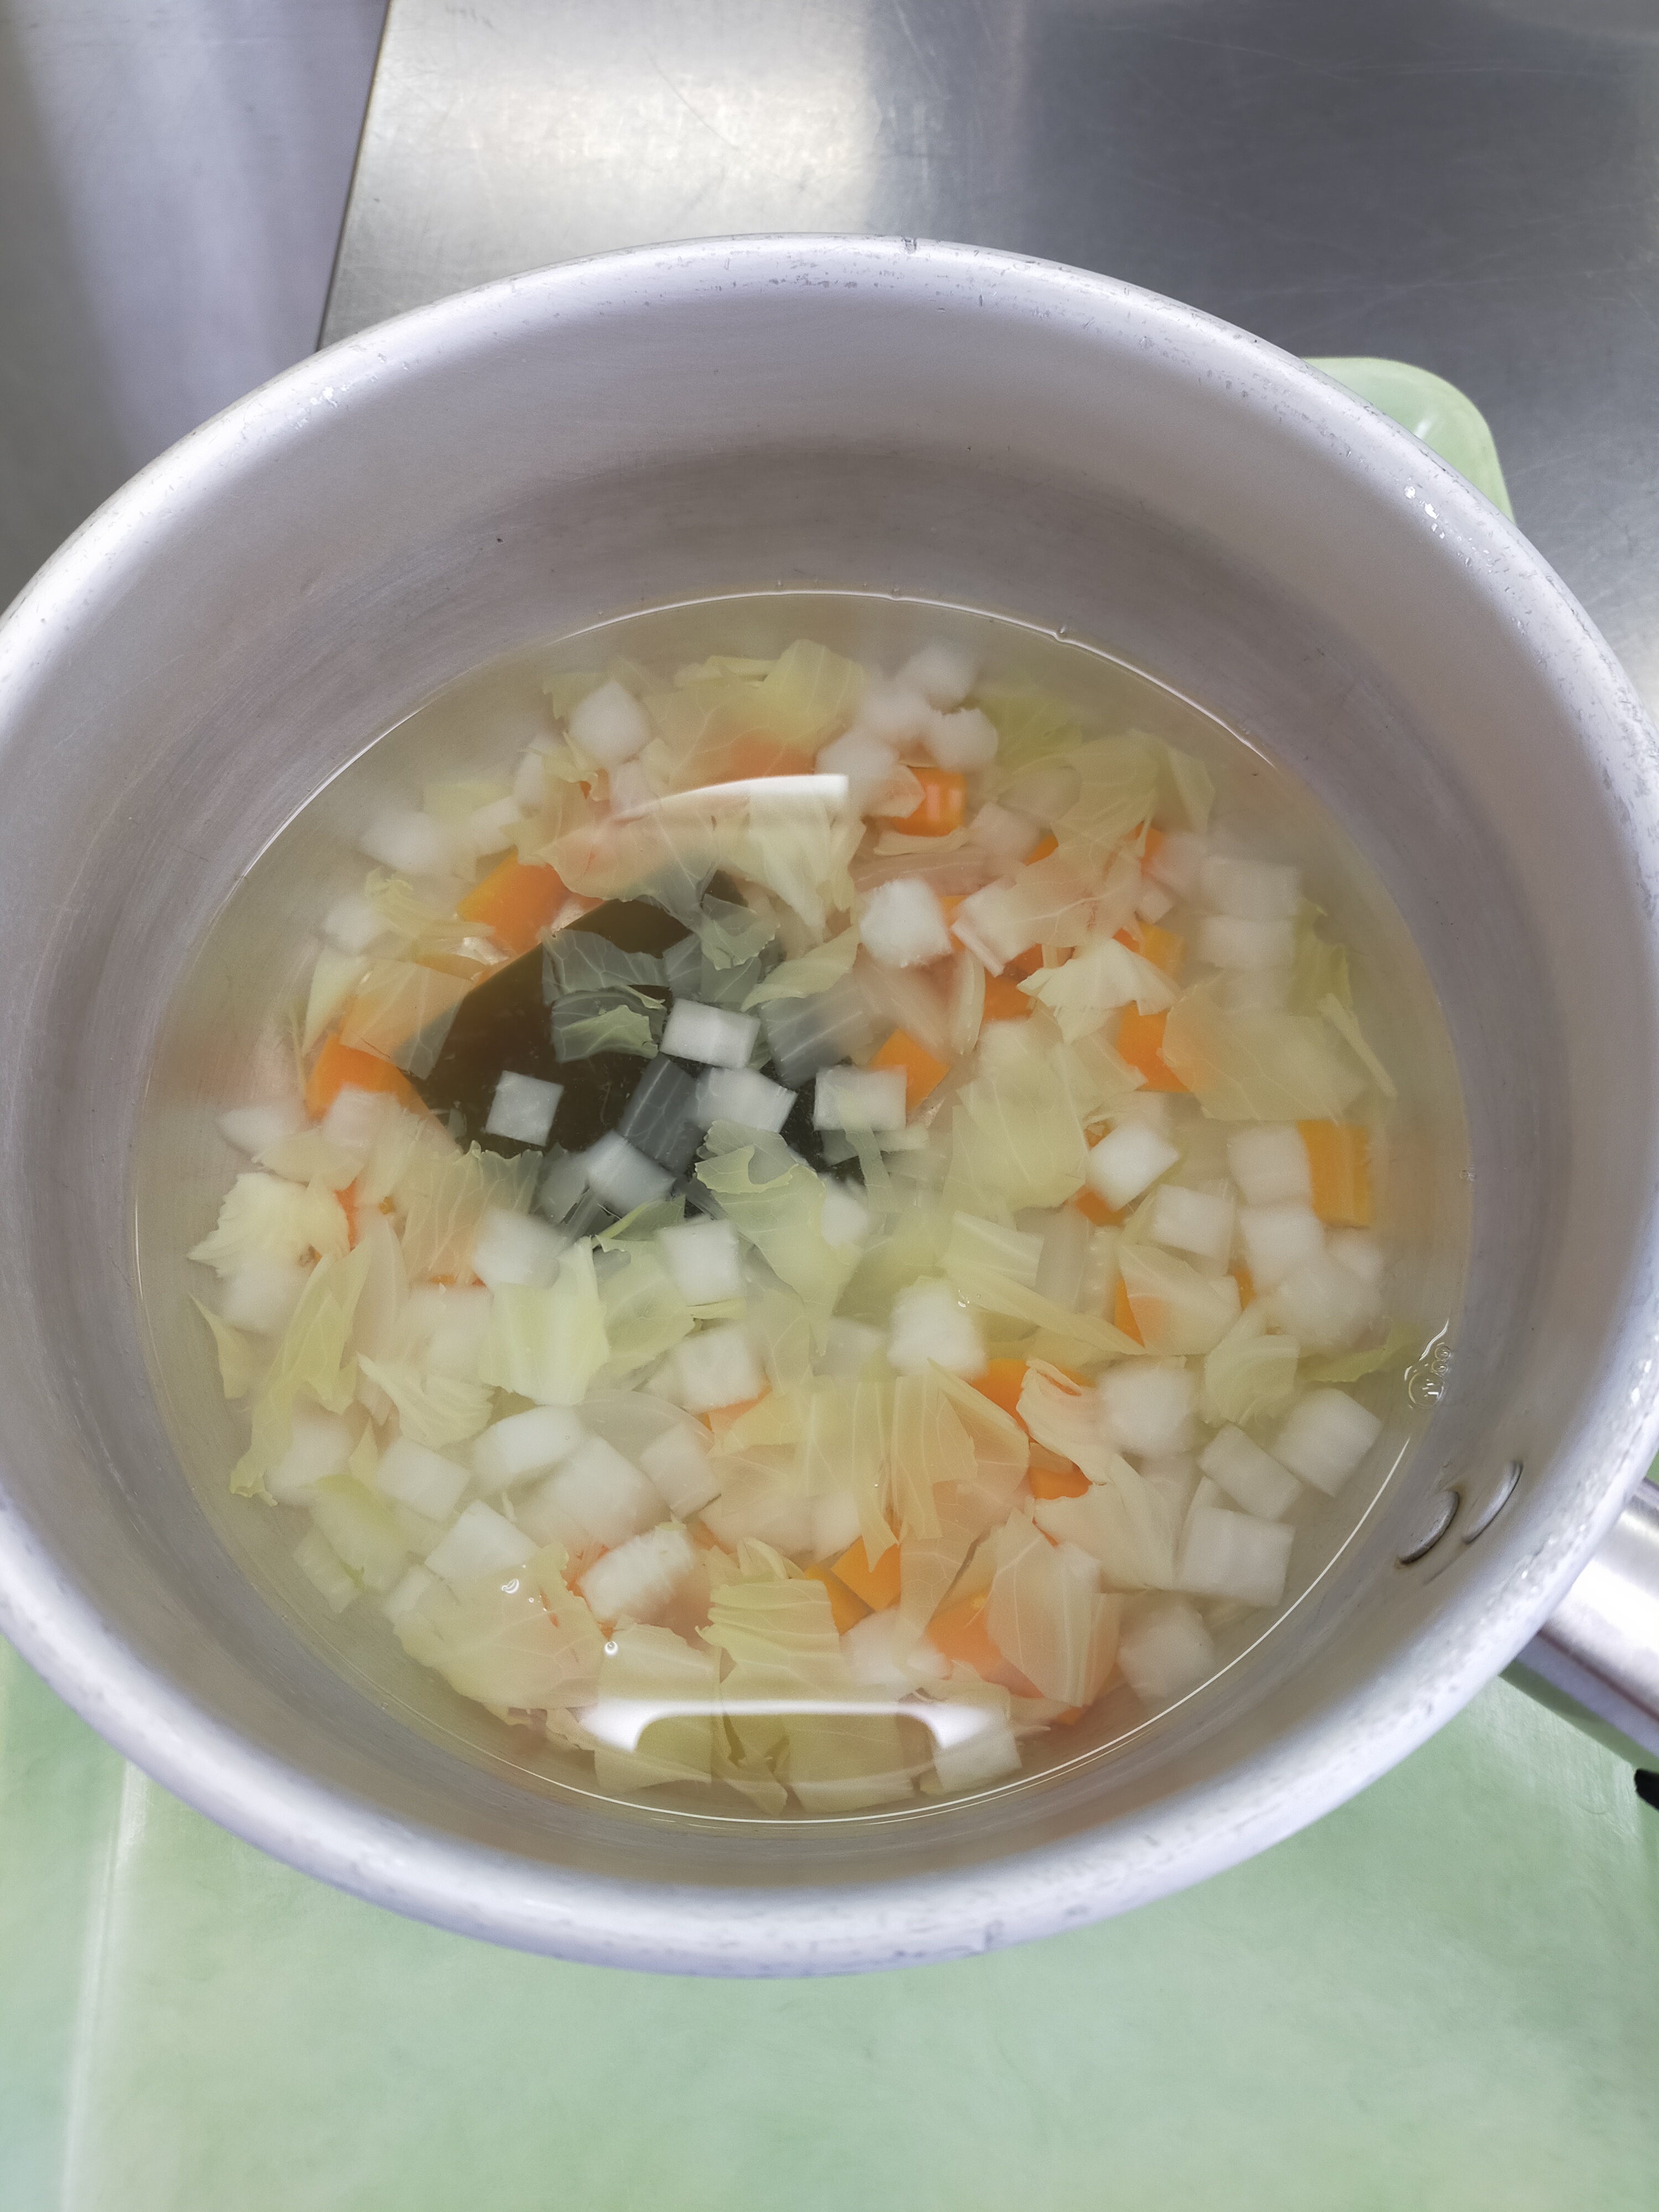 ☆★みんなで食べるとおいしいね★☆あったか根菜スープ